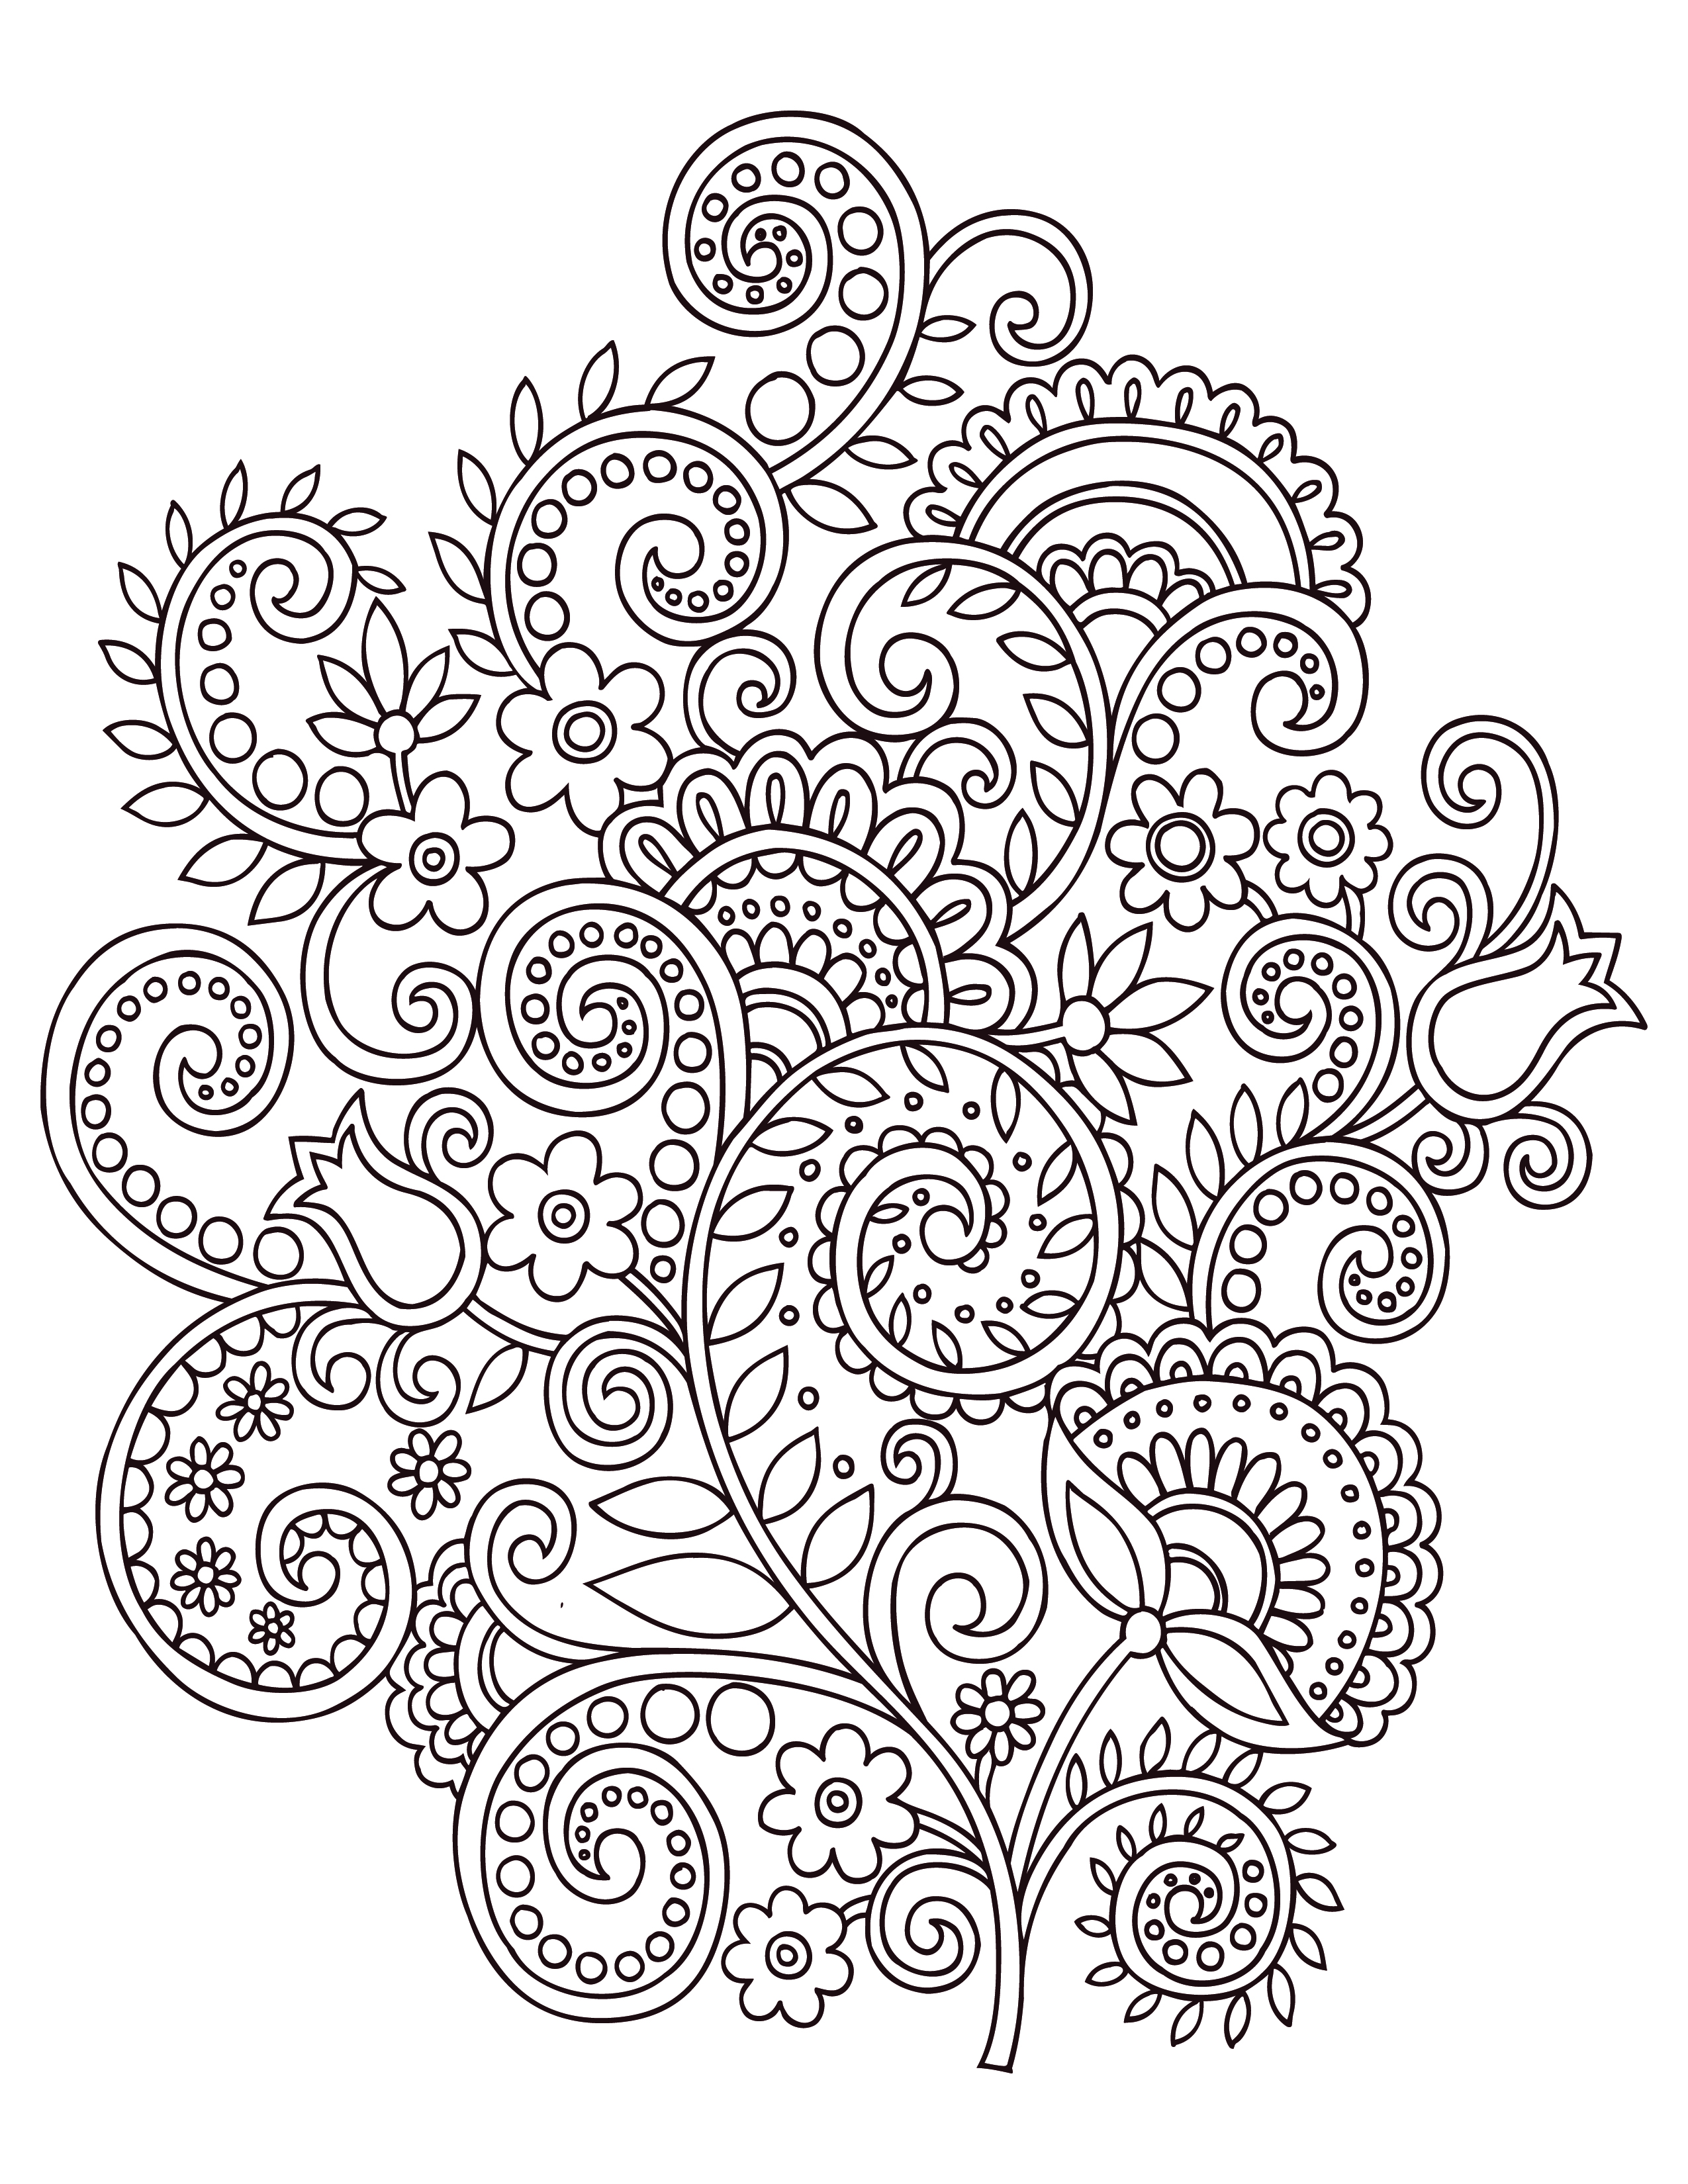 Fleurs doodle coloriage anti stress gratuit